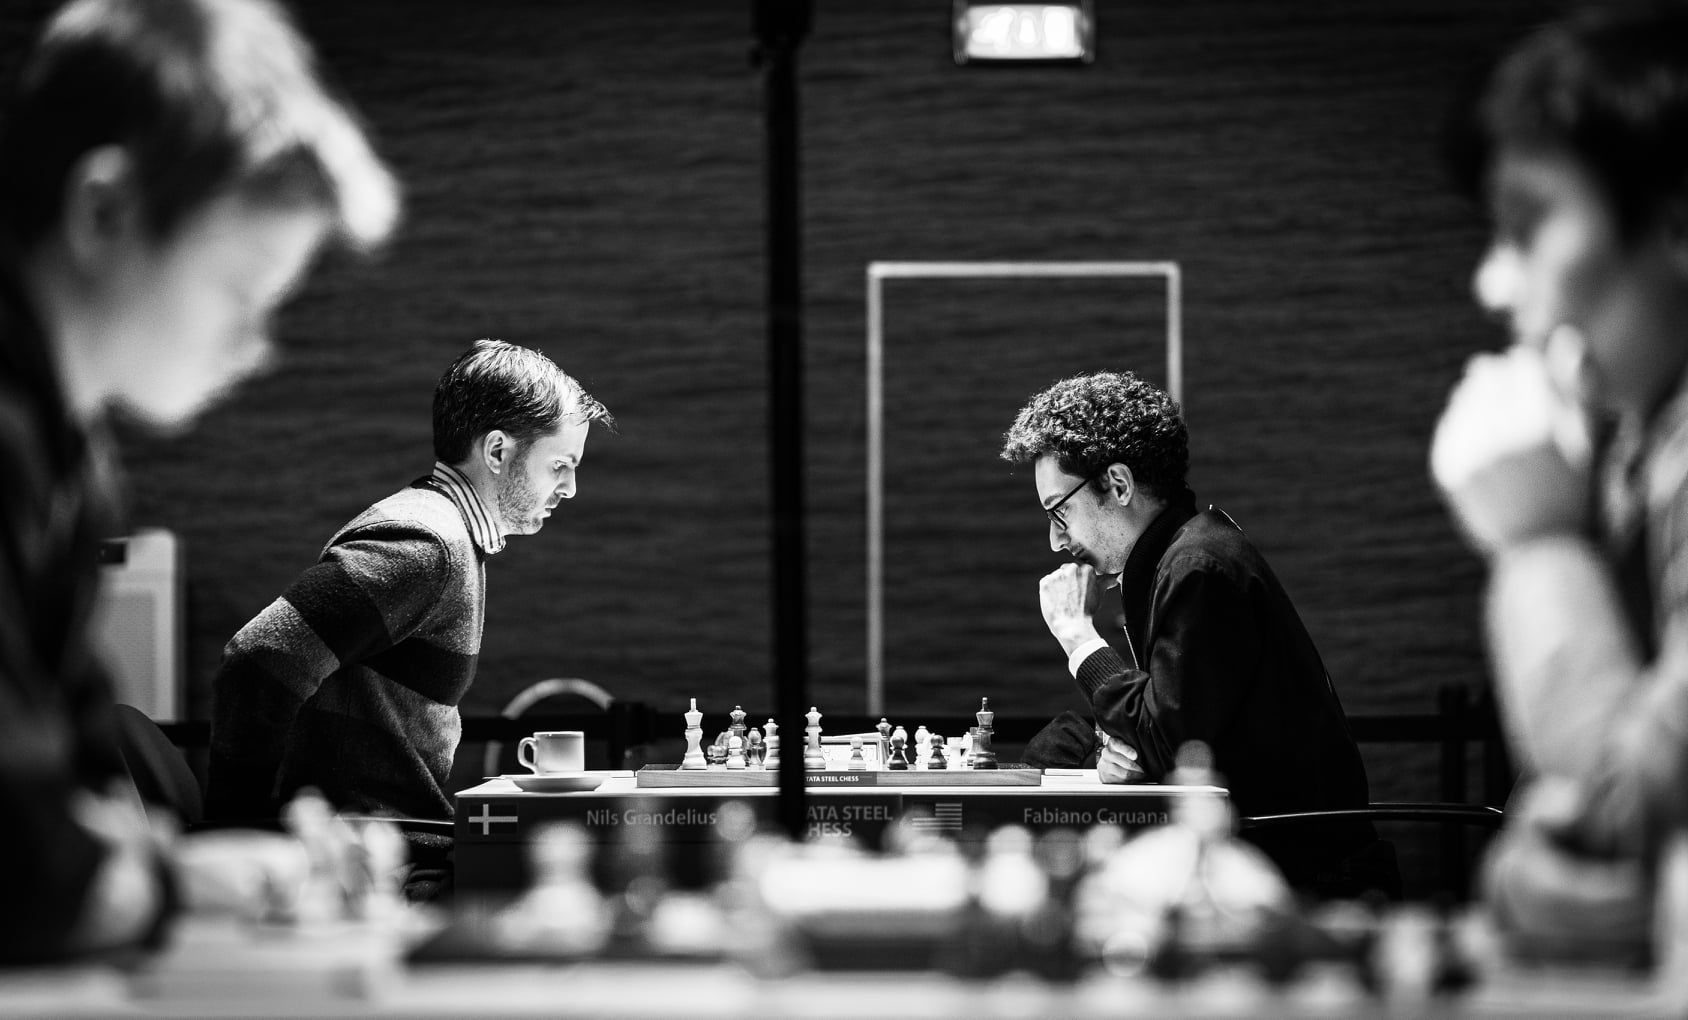 Carlsen e Caruana lideram a lista de jogadores do Tata Steel 2022